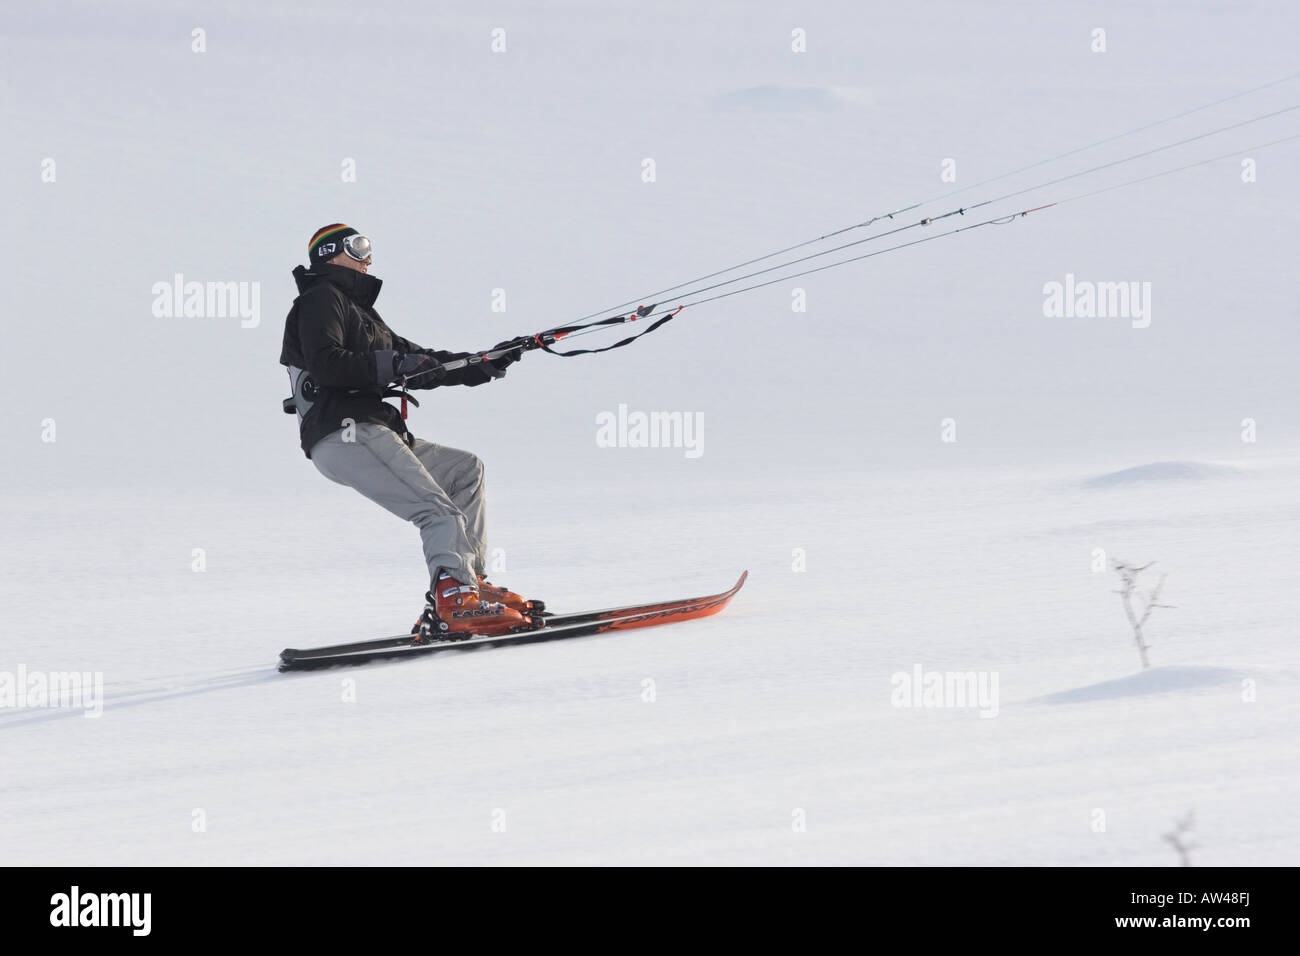 North America Idaho near Camas Prairie snow kite skiing Stock Photo